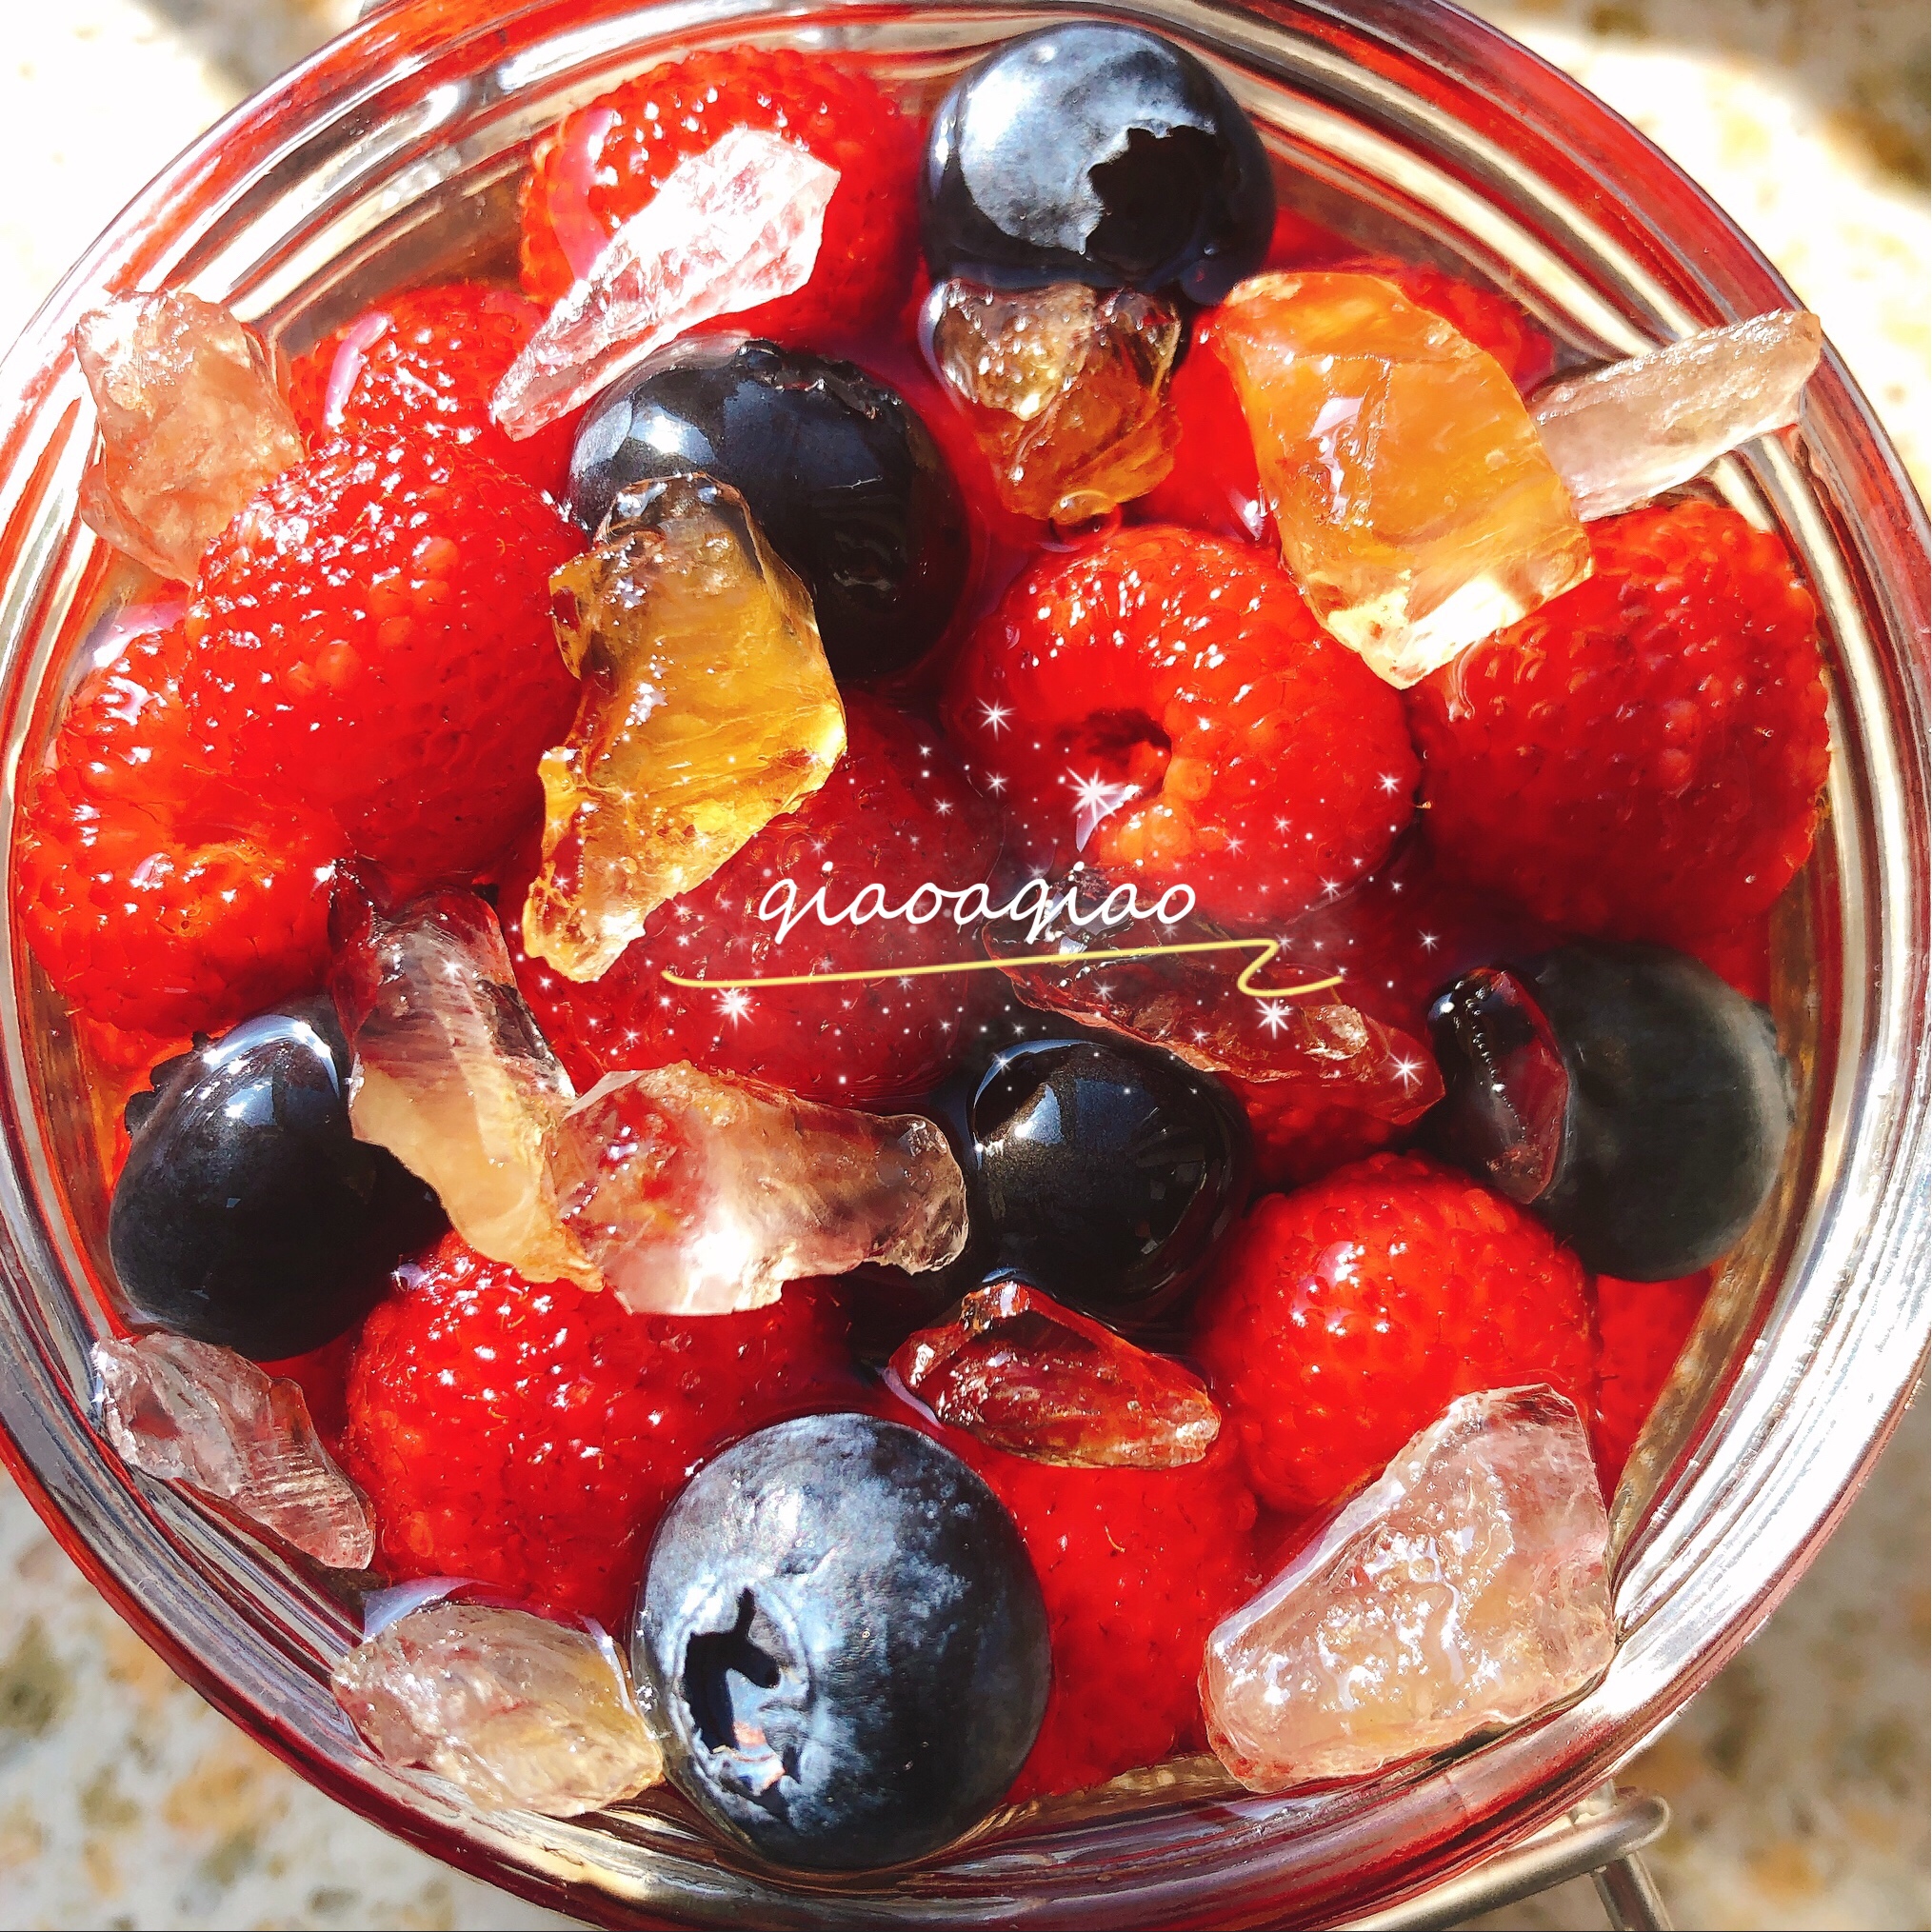 莓梅果酒（蓝莓、杨梅、覆盆子）适合女生喝的甜甜的果酒～